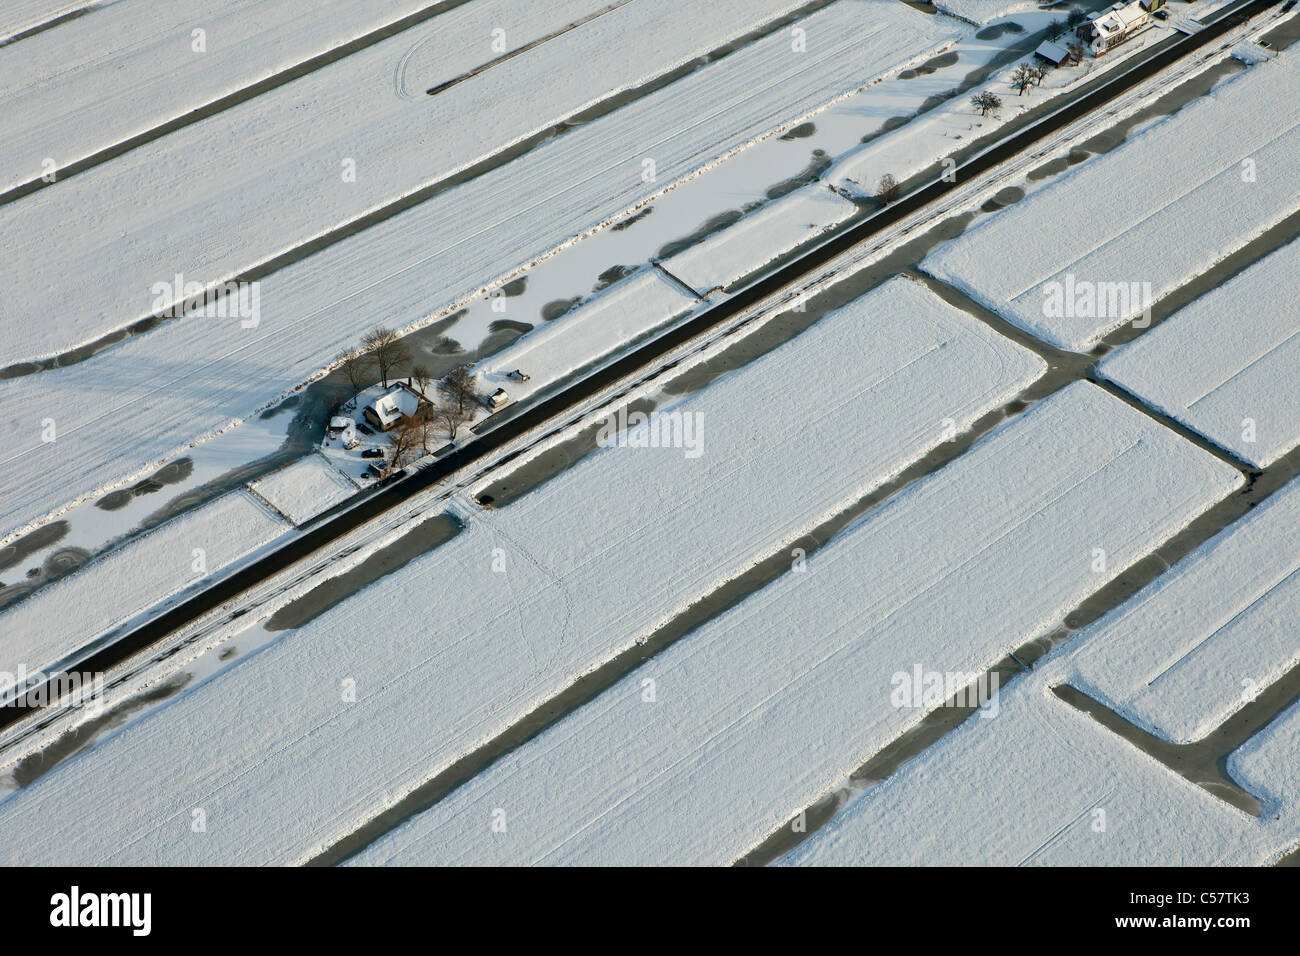 Den Niederlanden, in der Nähe von Schoonhoven, Hof im Schnee. Luft. Stockfoto